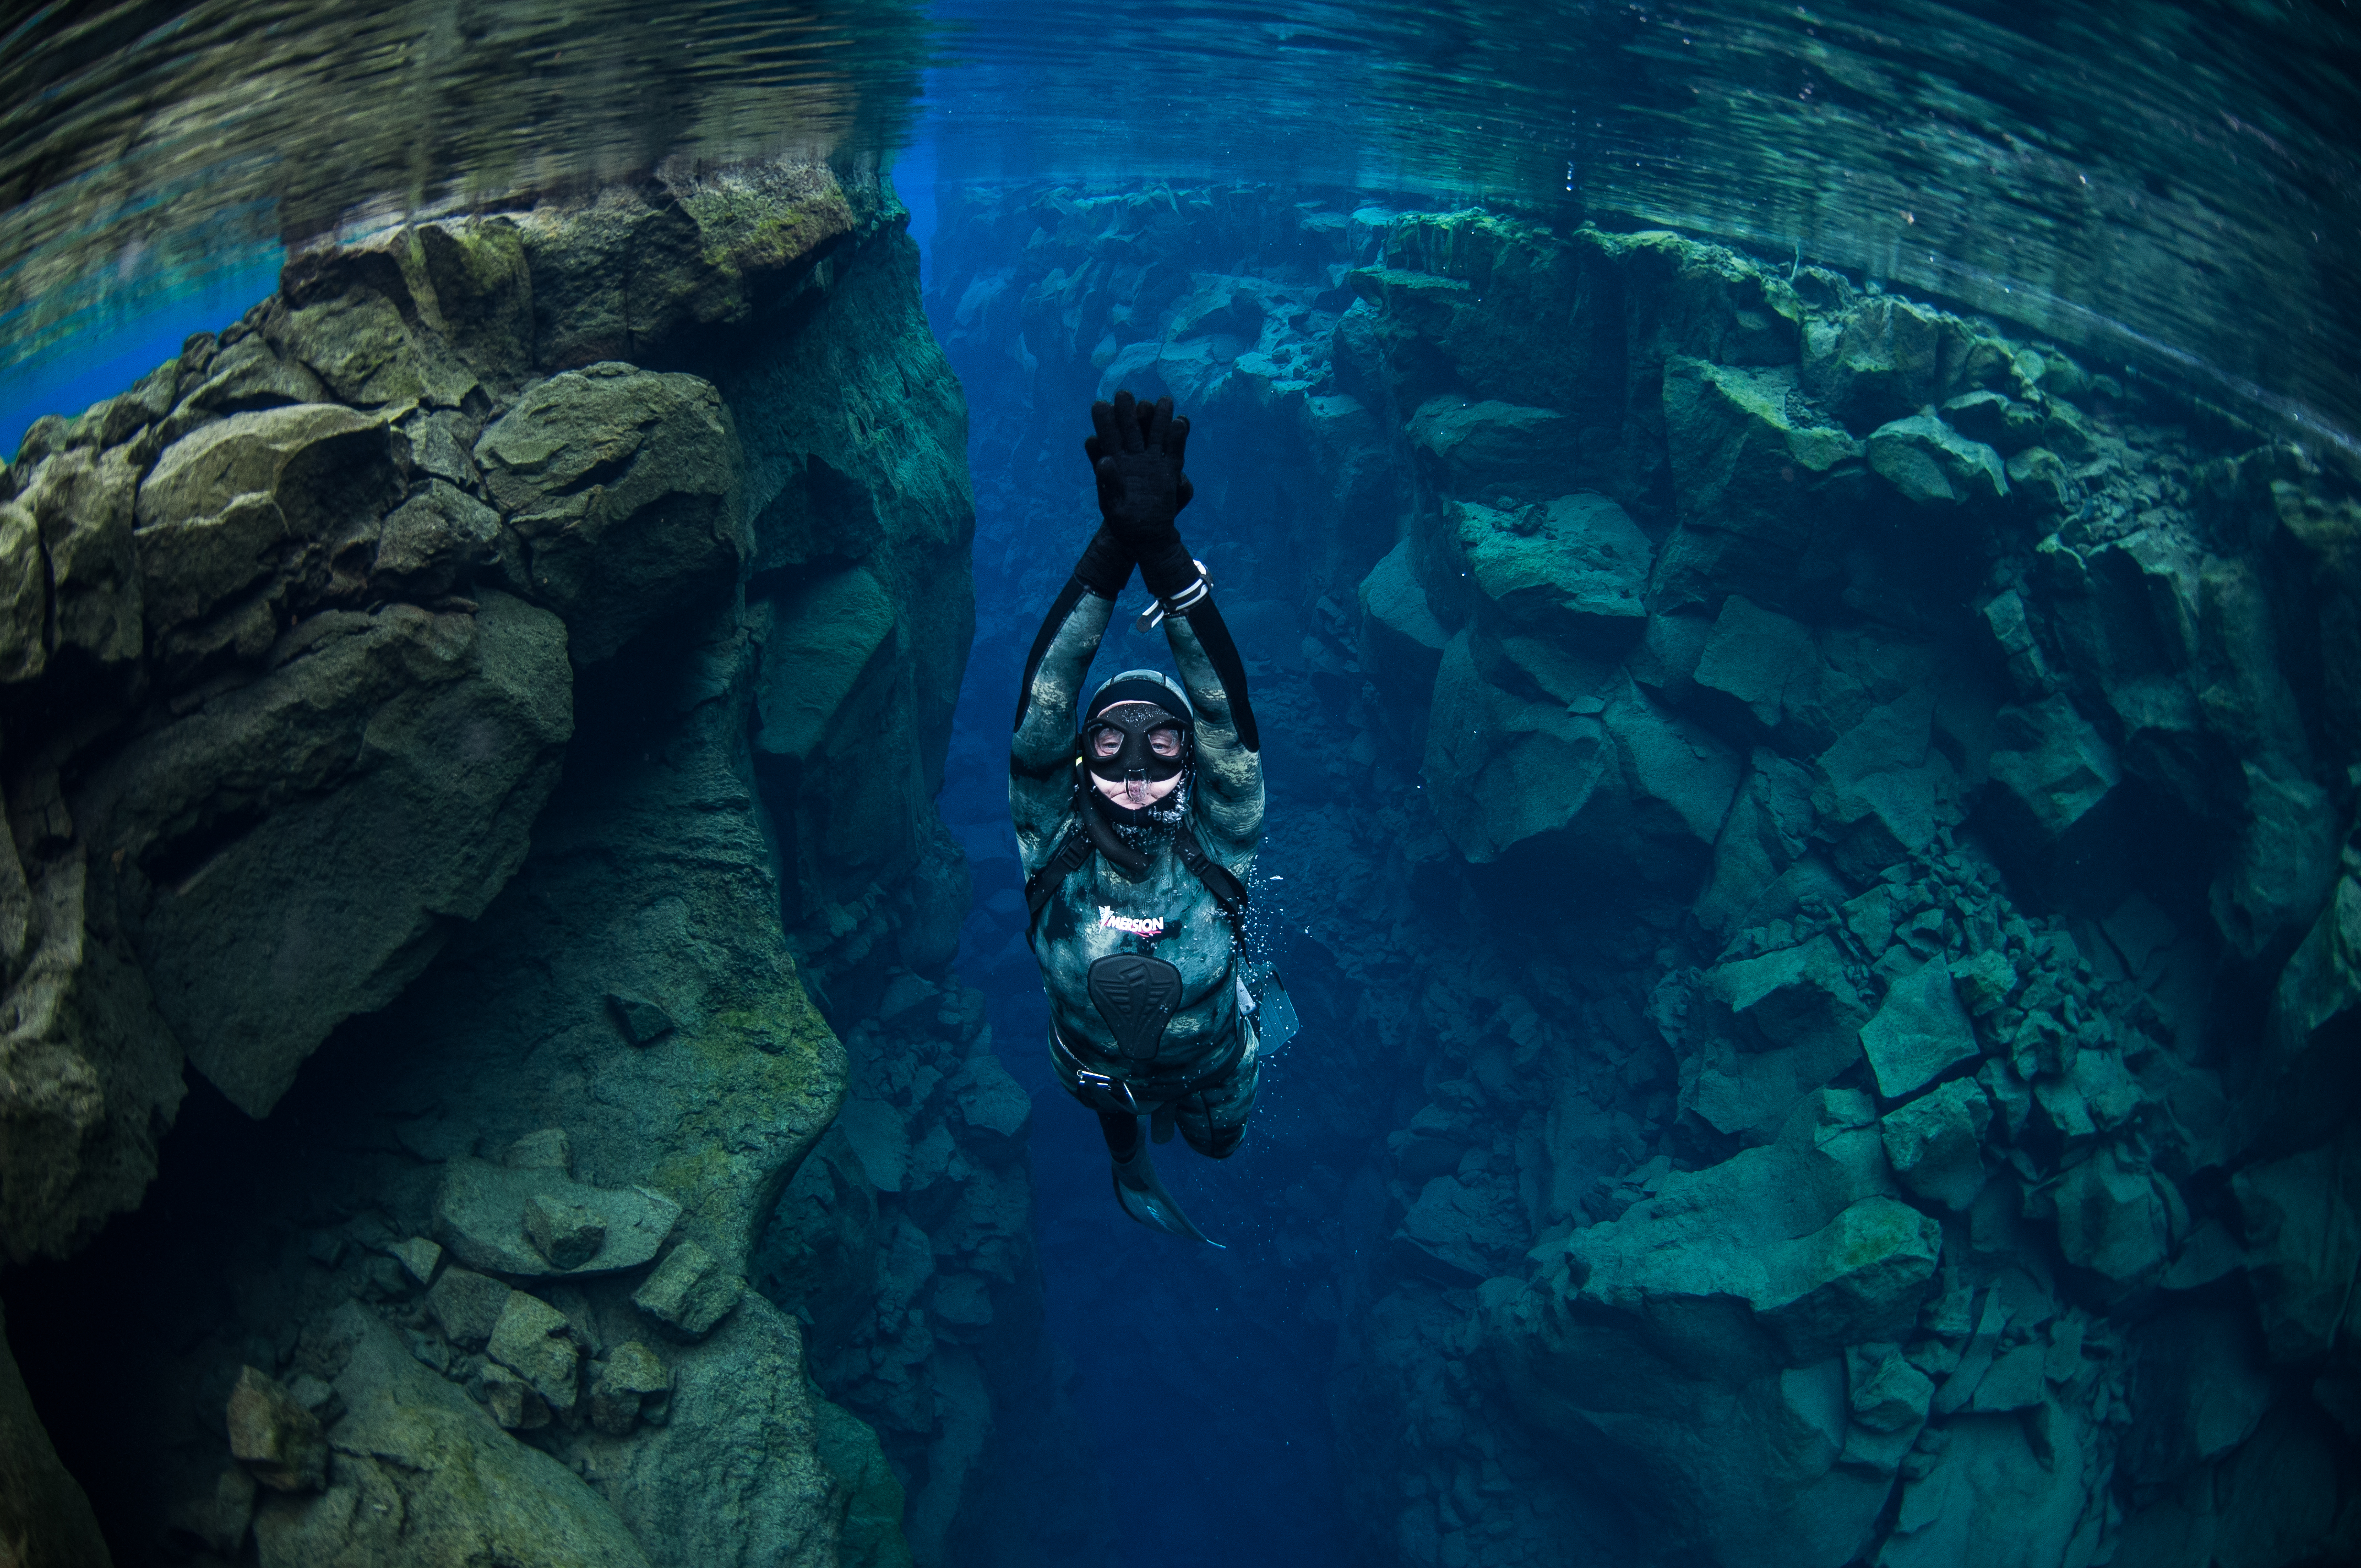 冰岛丝浮拉大裂缝是举世闻名的潜水、浮潜与自由潜水胜地。